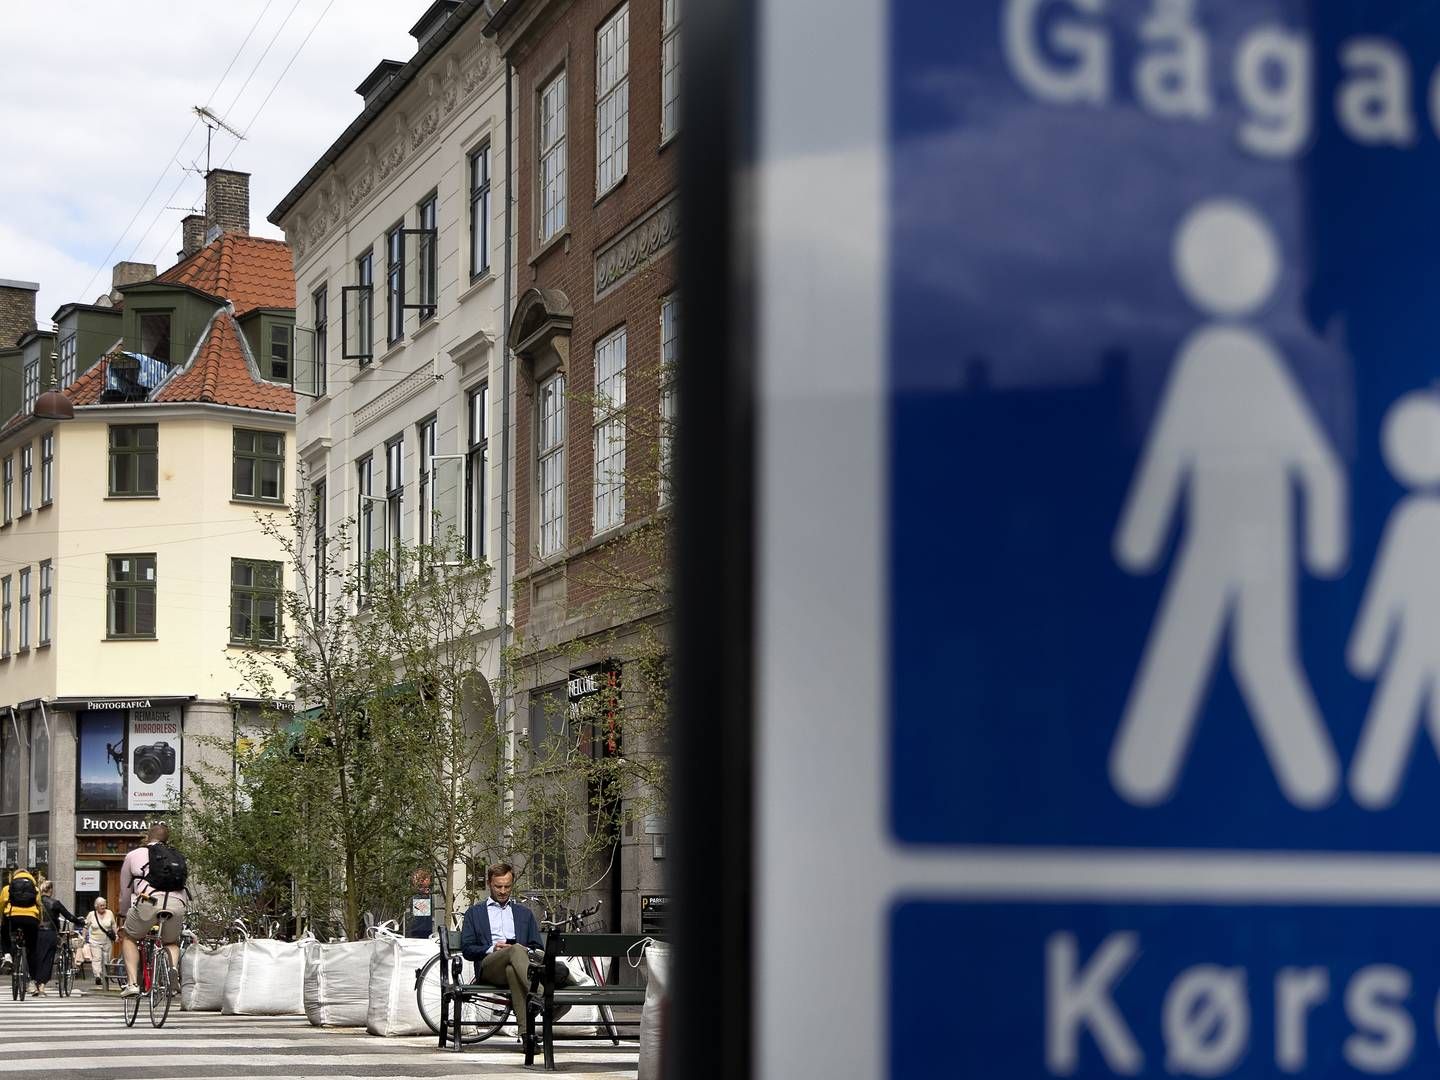 Mange kommuner oplever udfordringer med tomme butikker i bymidterne. Men ikke i Midt- og Vestjylland, der i øjeblikket oplever den laveste tomgang i 12 år. | Foto: Finn Frandsen/Ritzau Scanpix